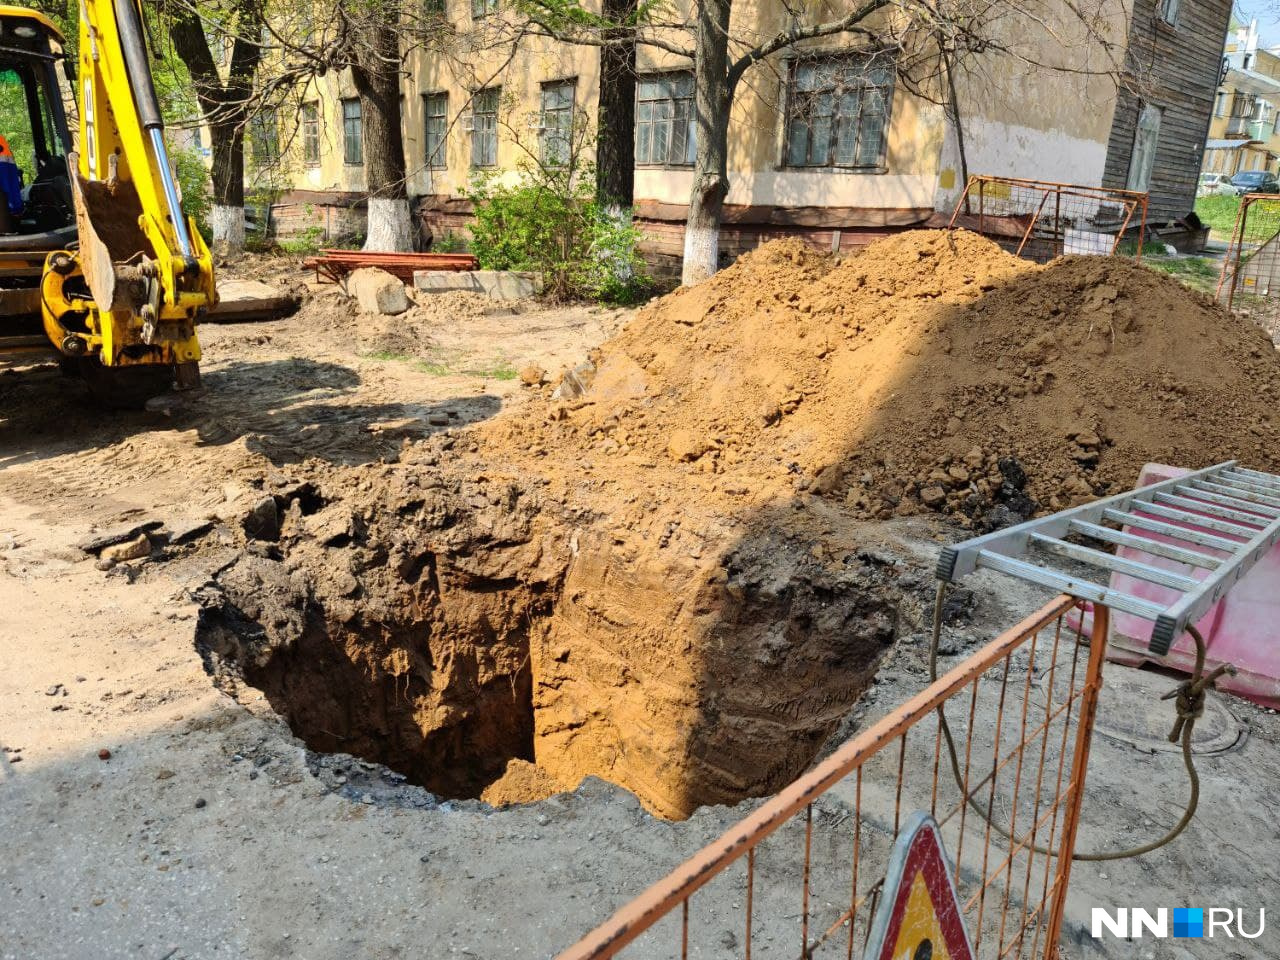 Рабочие выкопали яму глубиной <nobr class="_">3,5 метра</nobr>, но, по словам местных жителей, длины ковша трактора не хватило на дальнейшие раскопки и позже подогнали экскаватор